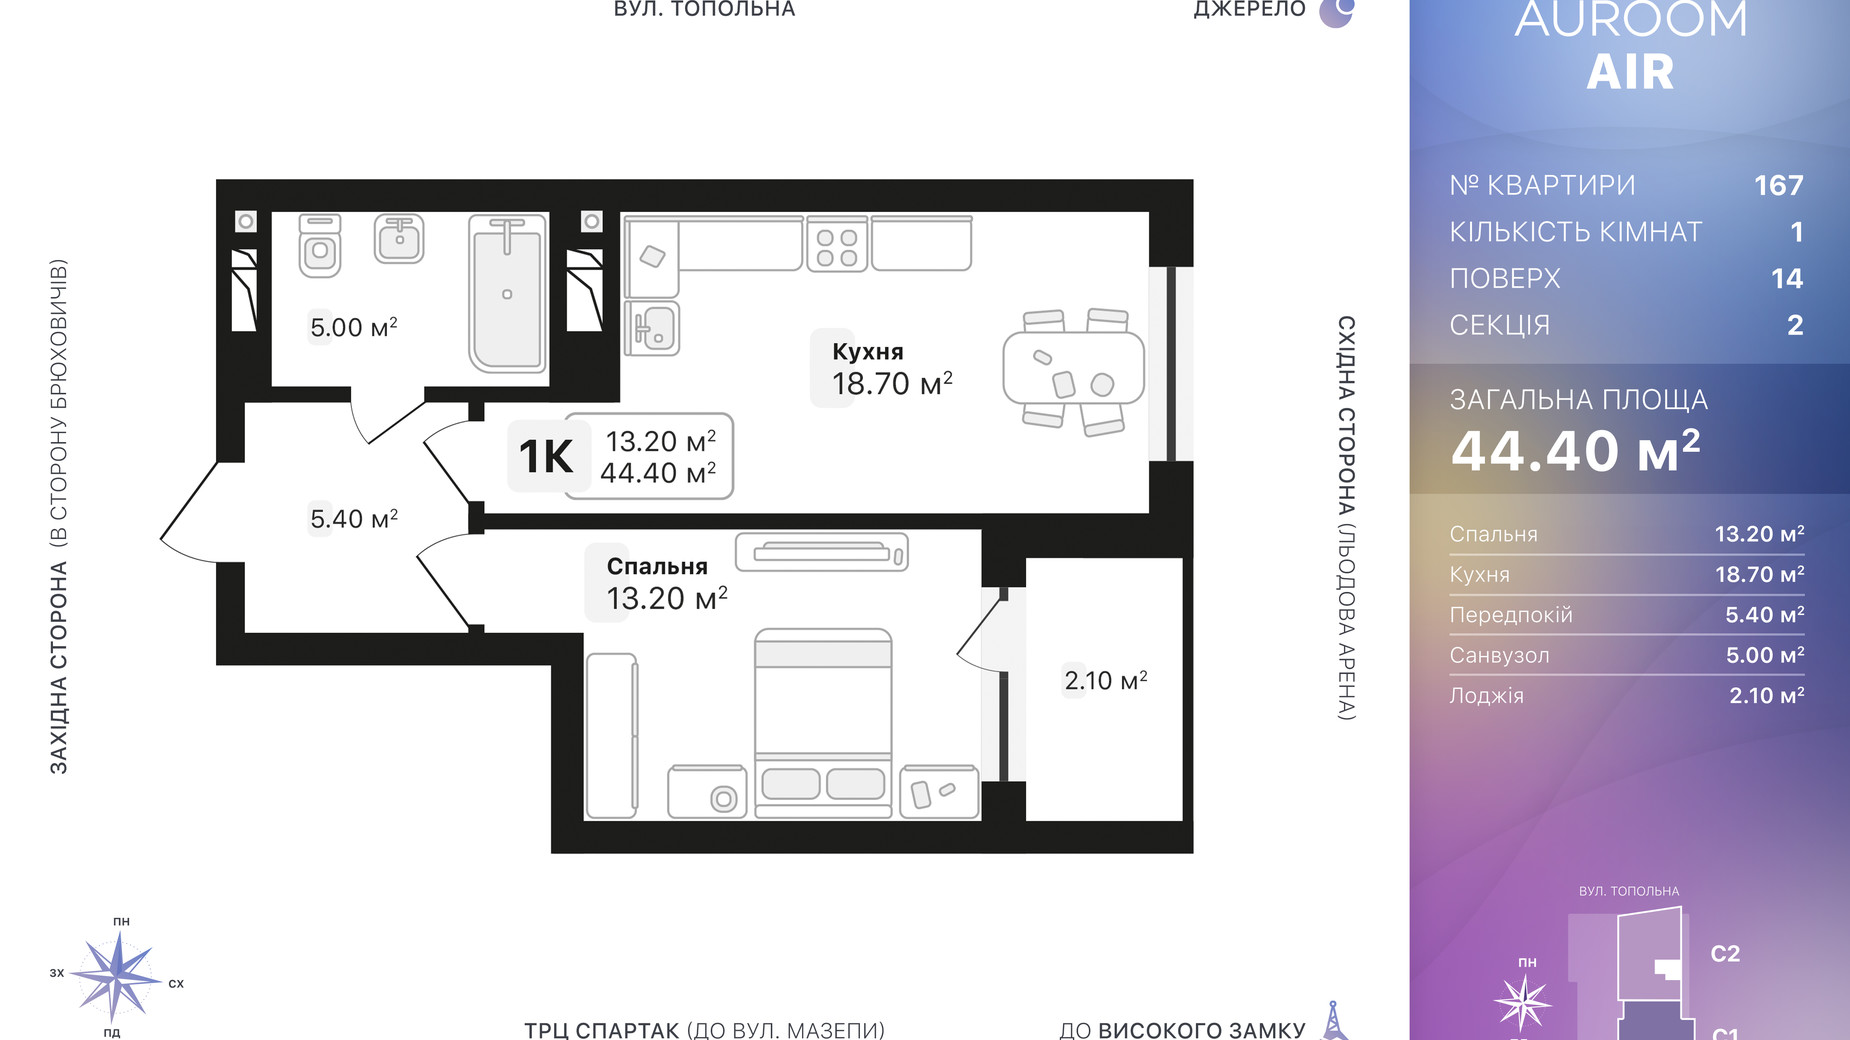 Планировка 1-комнатной квартиры в ЖК Auroom Air 44.4 м², фото 552433